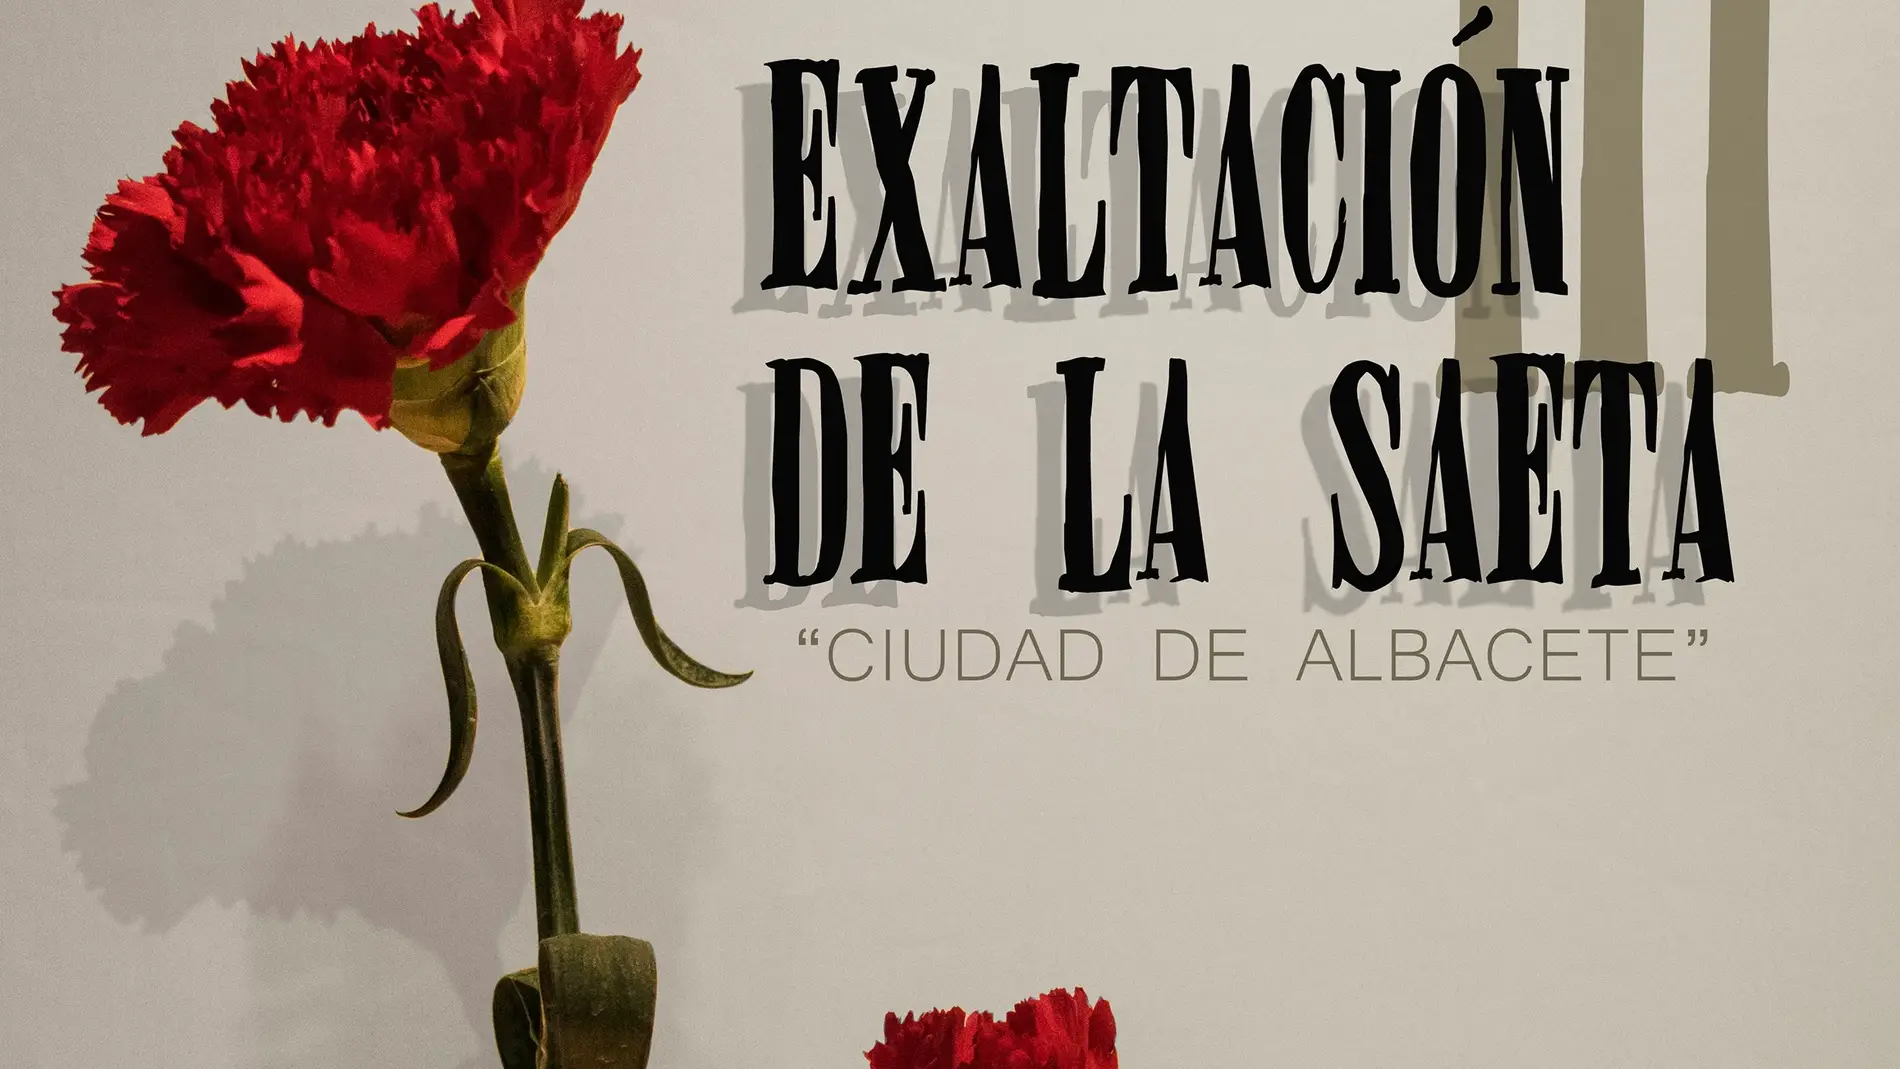 Exaltación de la Saeta 'Ciudad de Albacete'